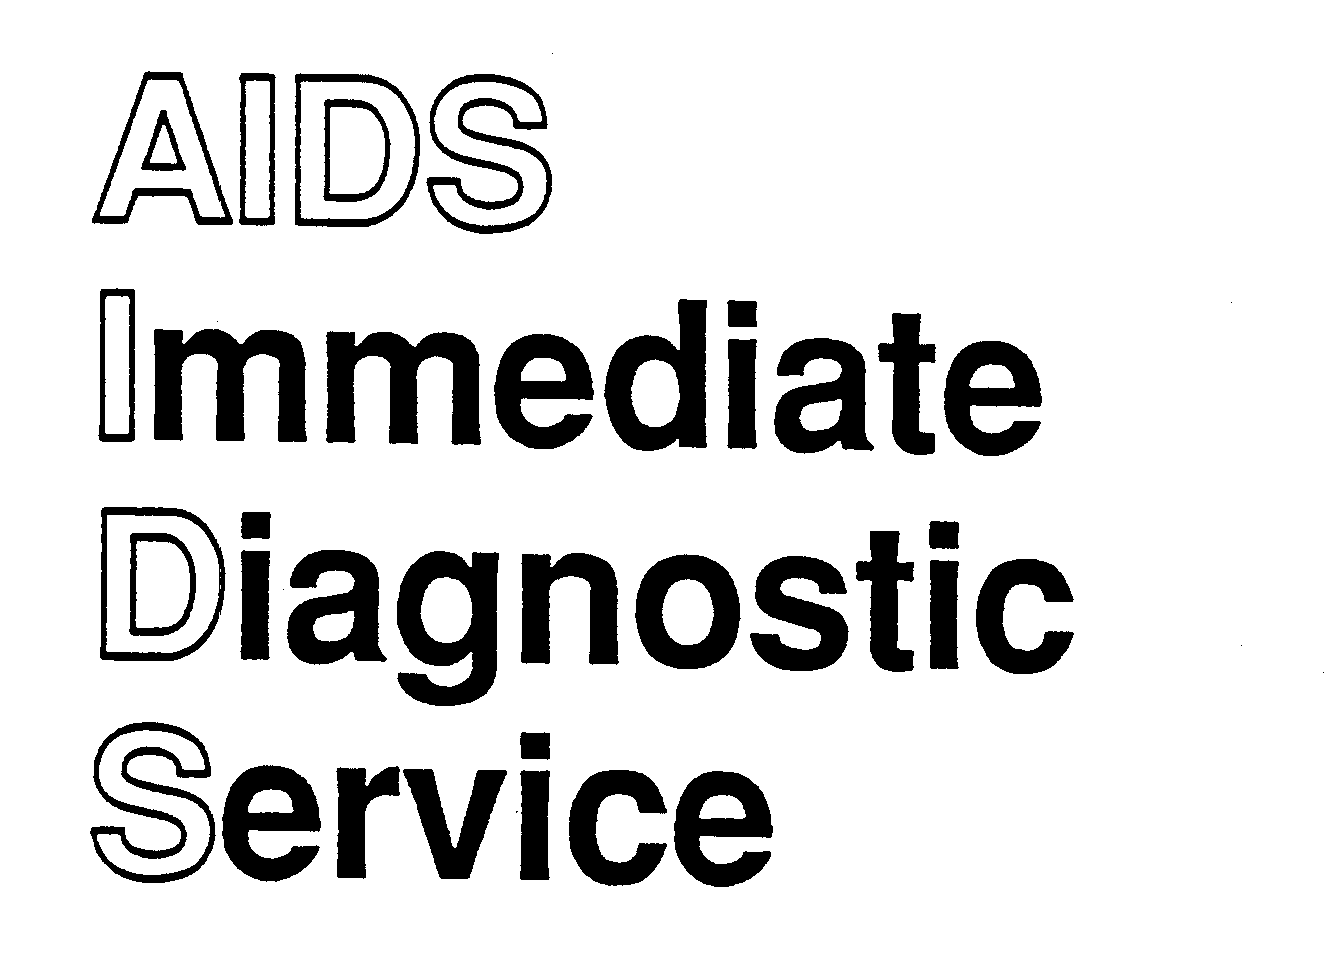  AIDS IMMEDIATE DIAGNOSTIC SERVICE